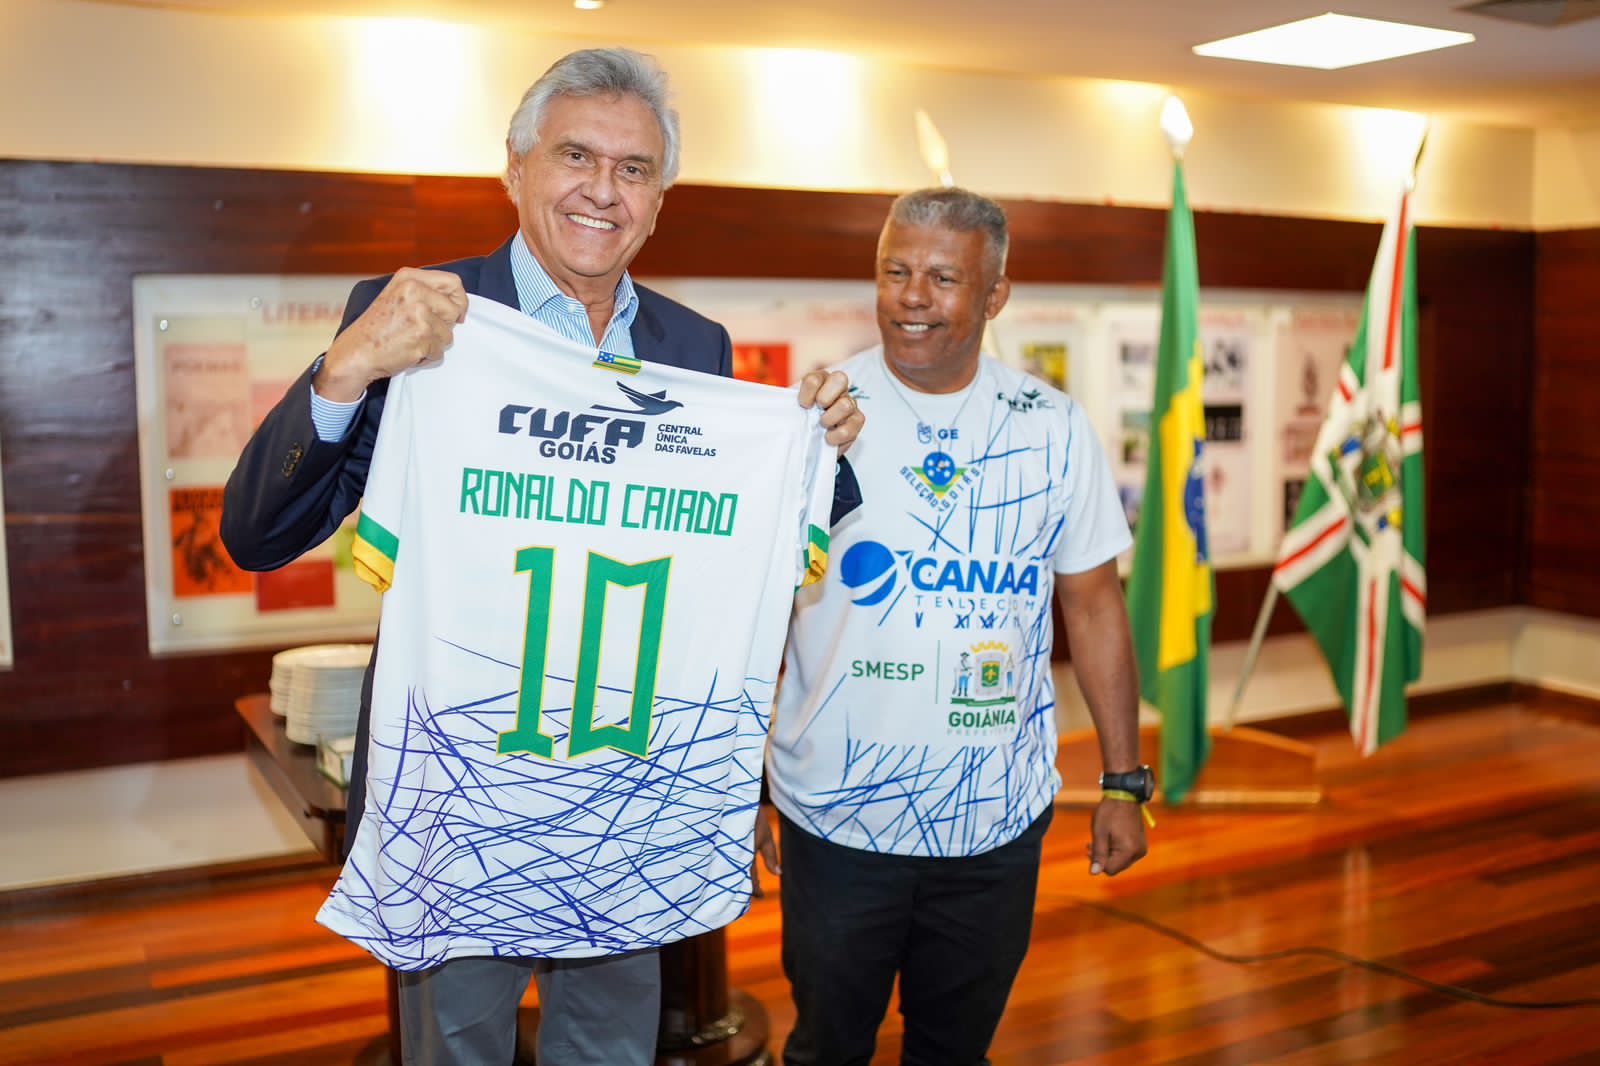 Ronaldo Caiado com a camiseta da Cufa Goiás